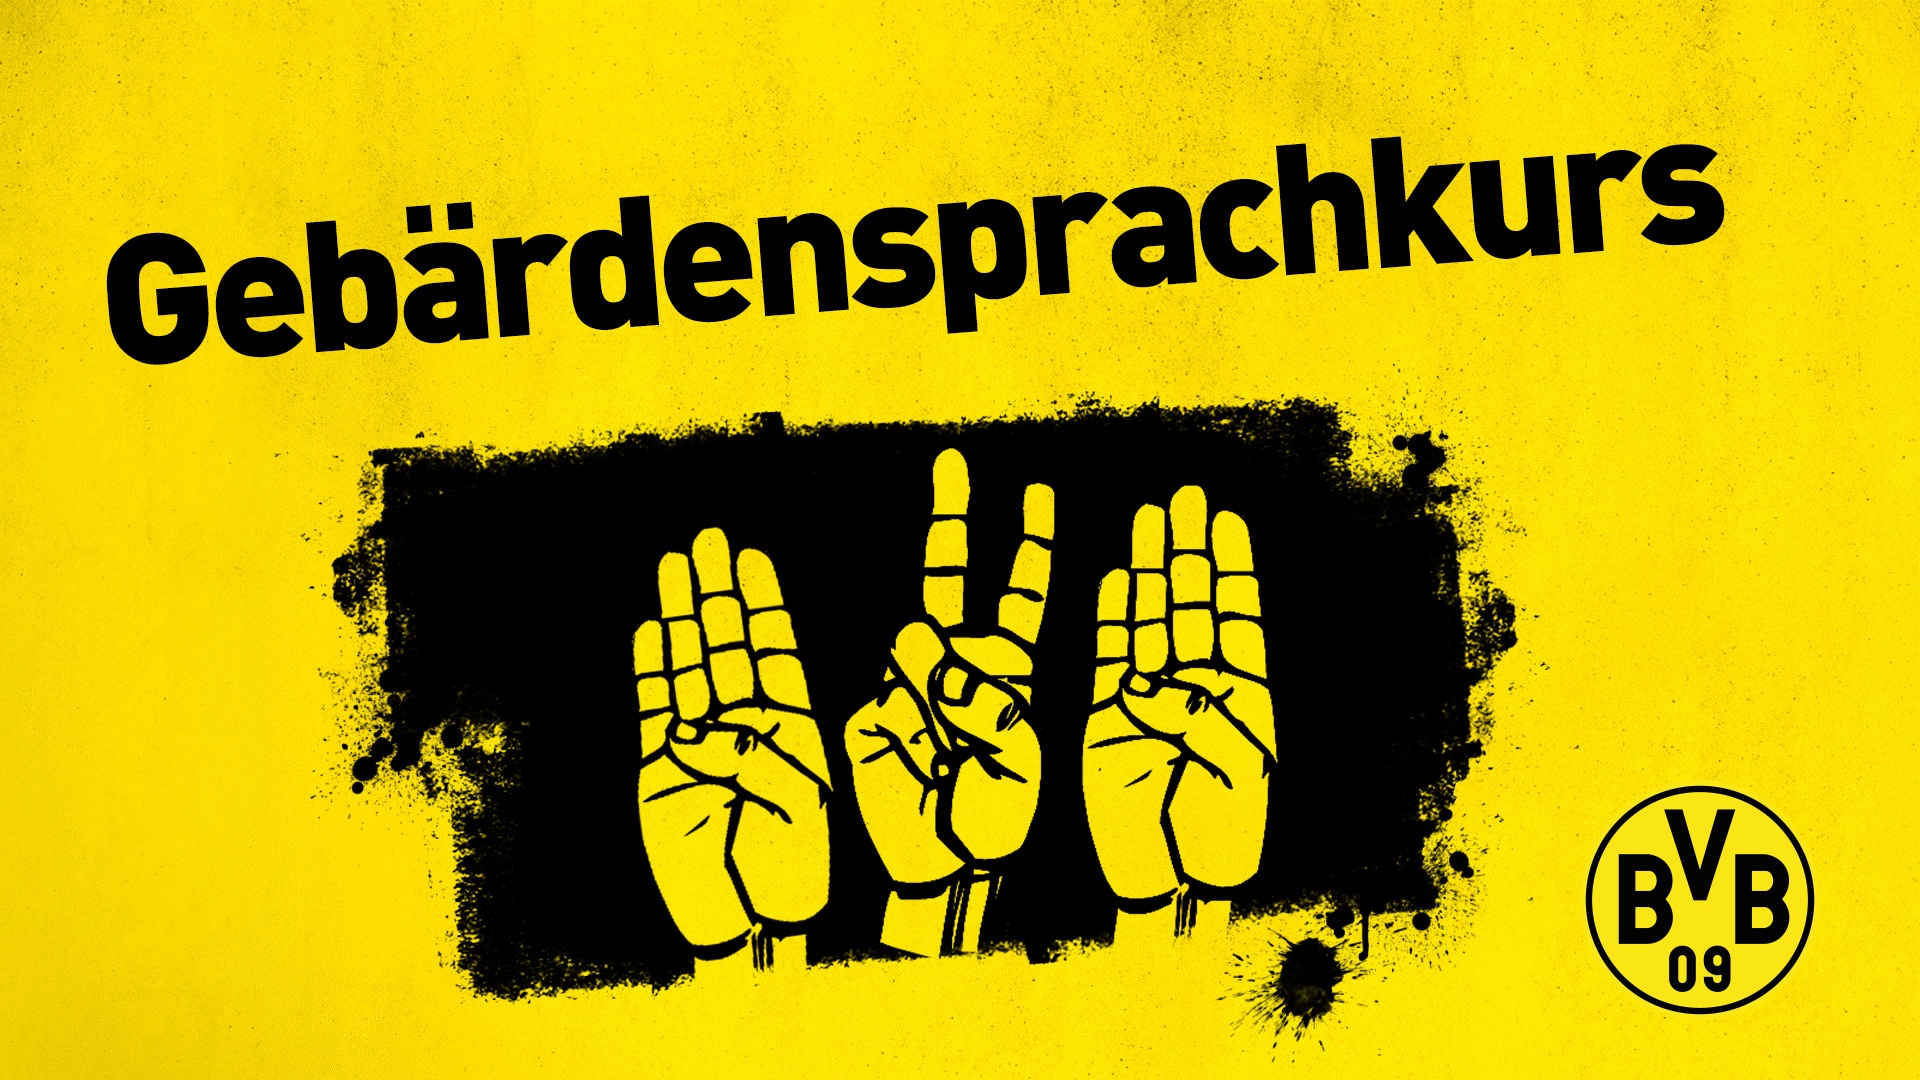 Text Gebärdensprachekurs, darunter Handzeichen für BVB in Gebärdensprache. Das gesamte Bild ist schwarz-gelb.